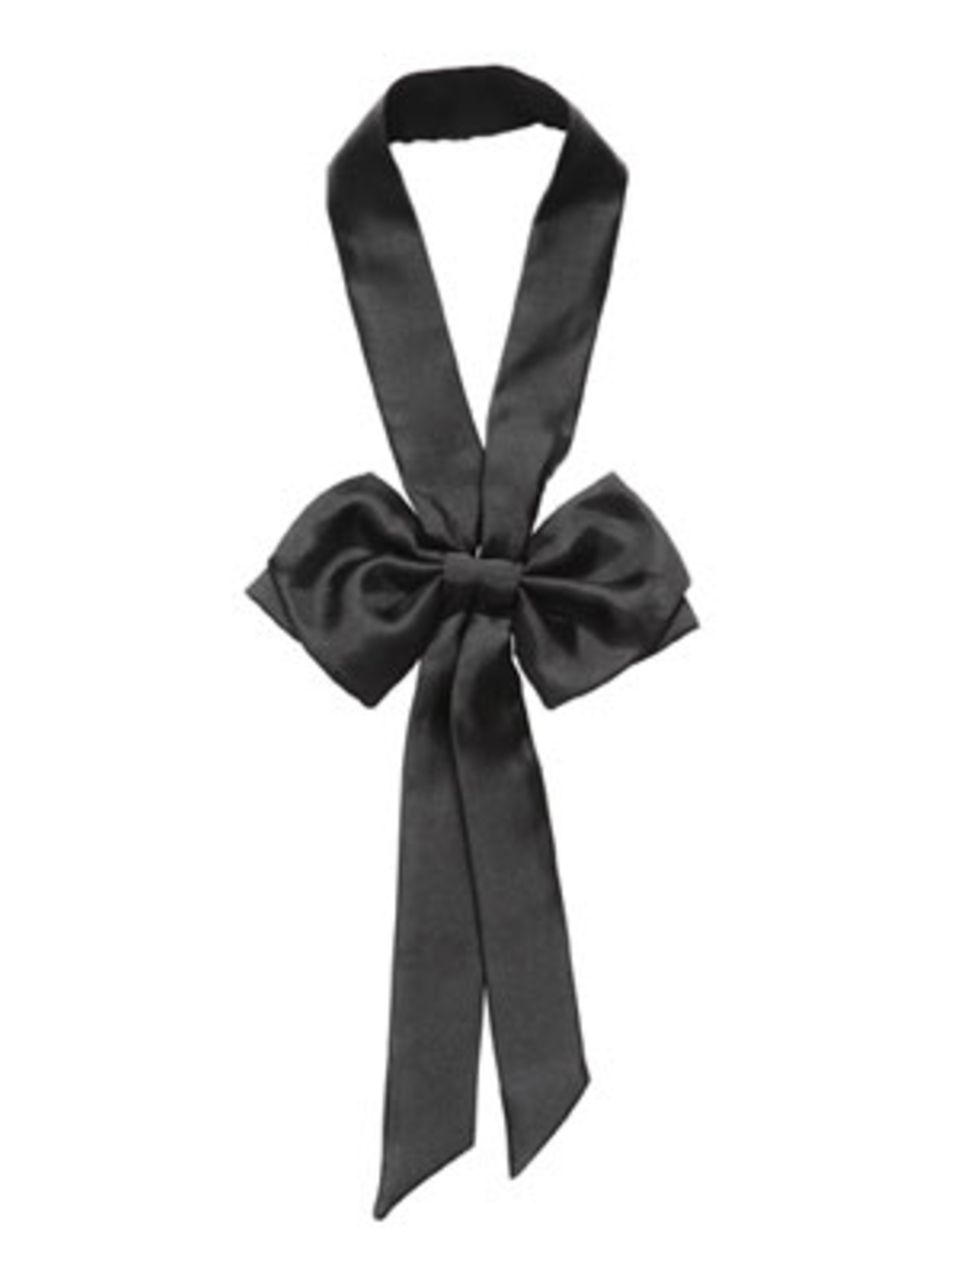 Lange Schwarze Seidenkette-Krawatte mit Schleife von H&M, um 6 Euro.